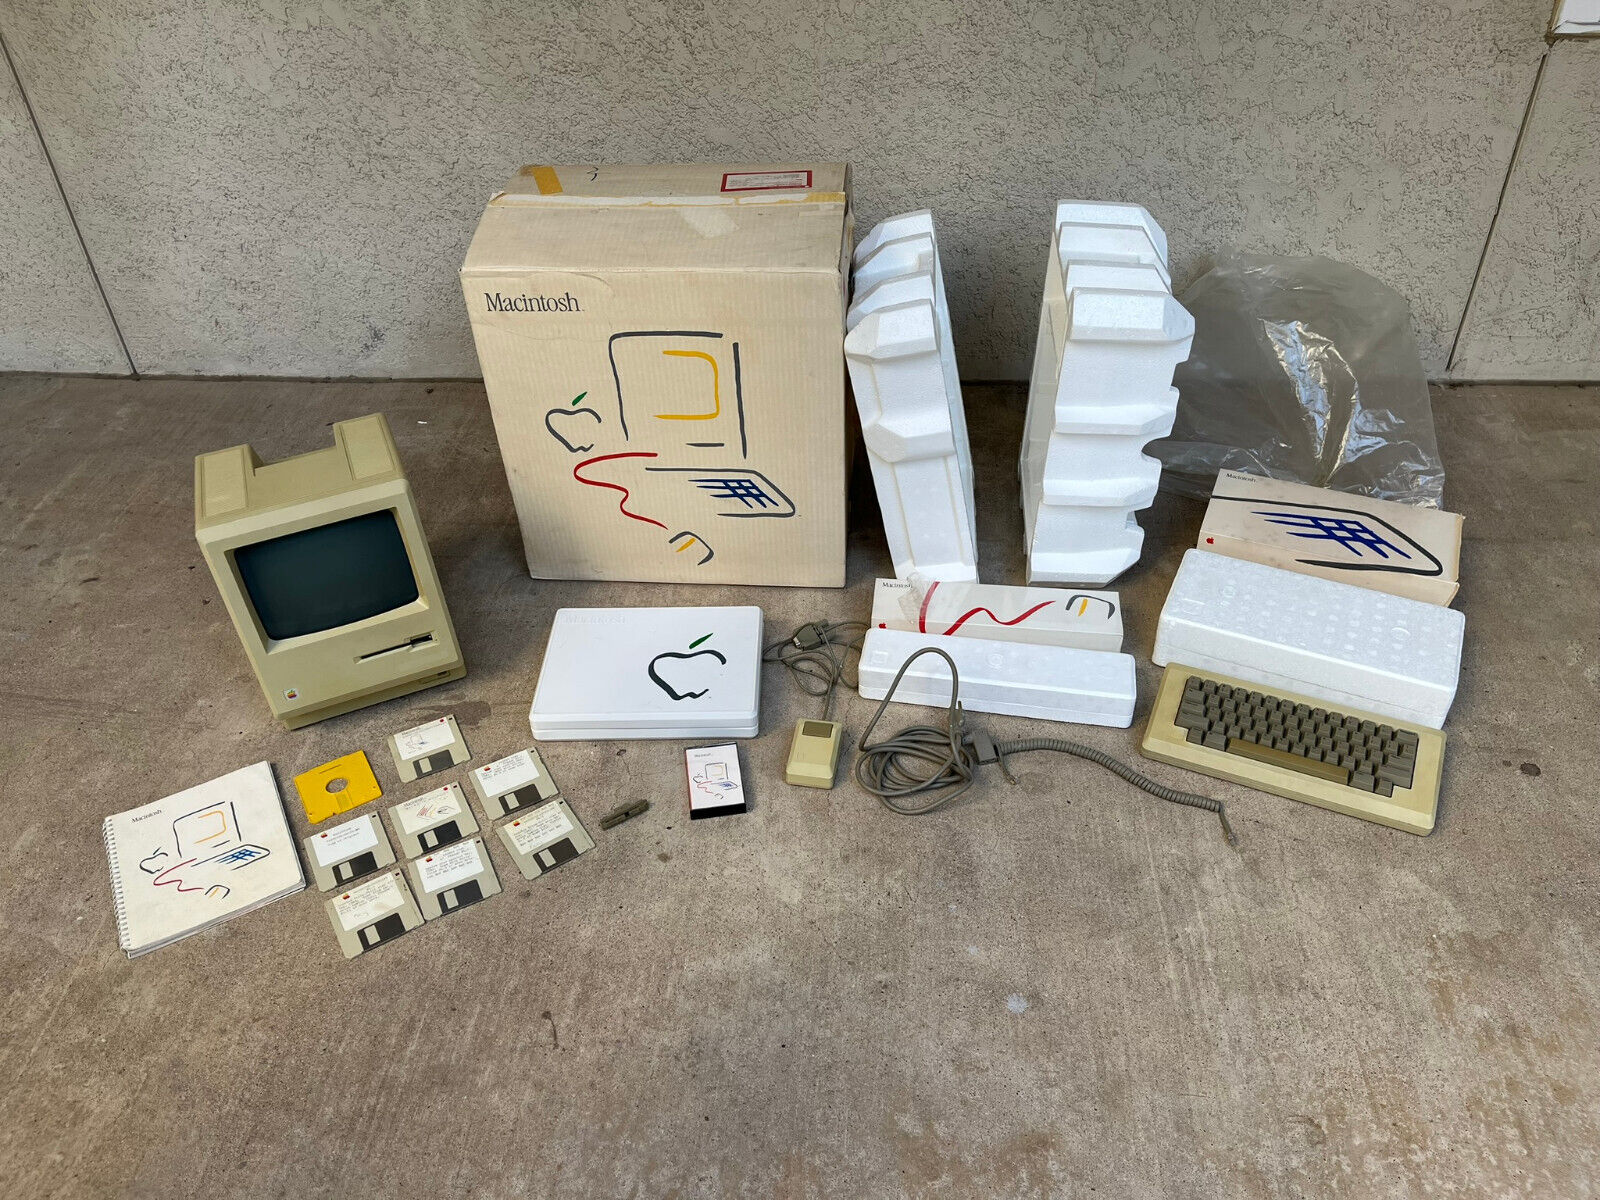 Original 1984 Macintosh 128k M0001 - IN ORIGINAL BOX - Once in a Lifetime Find